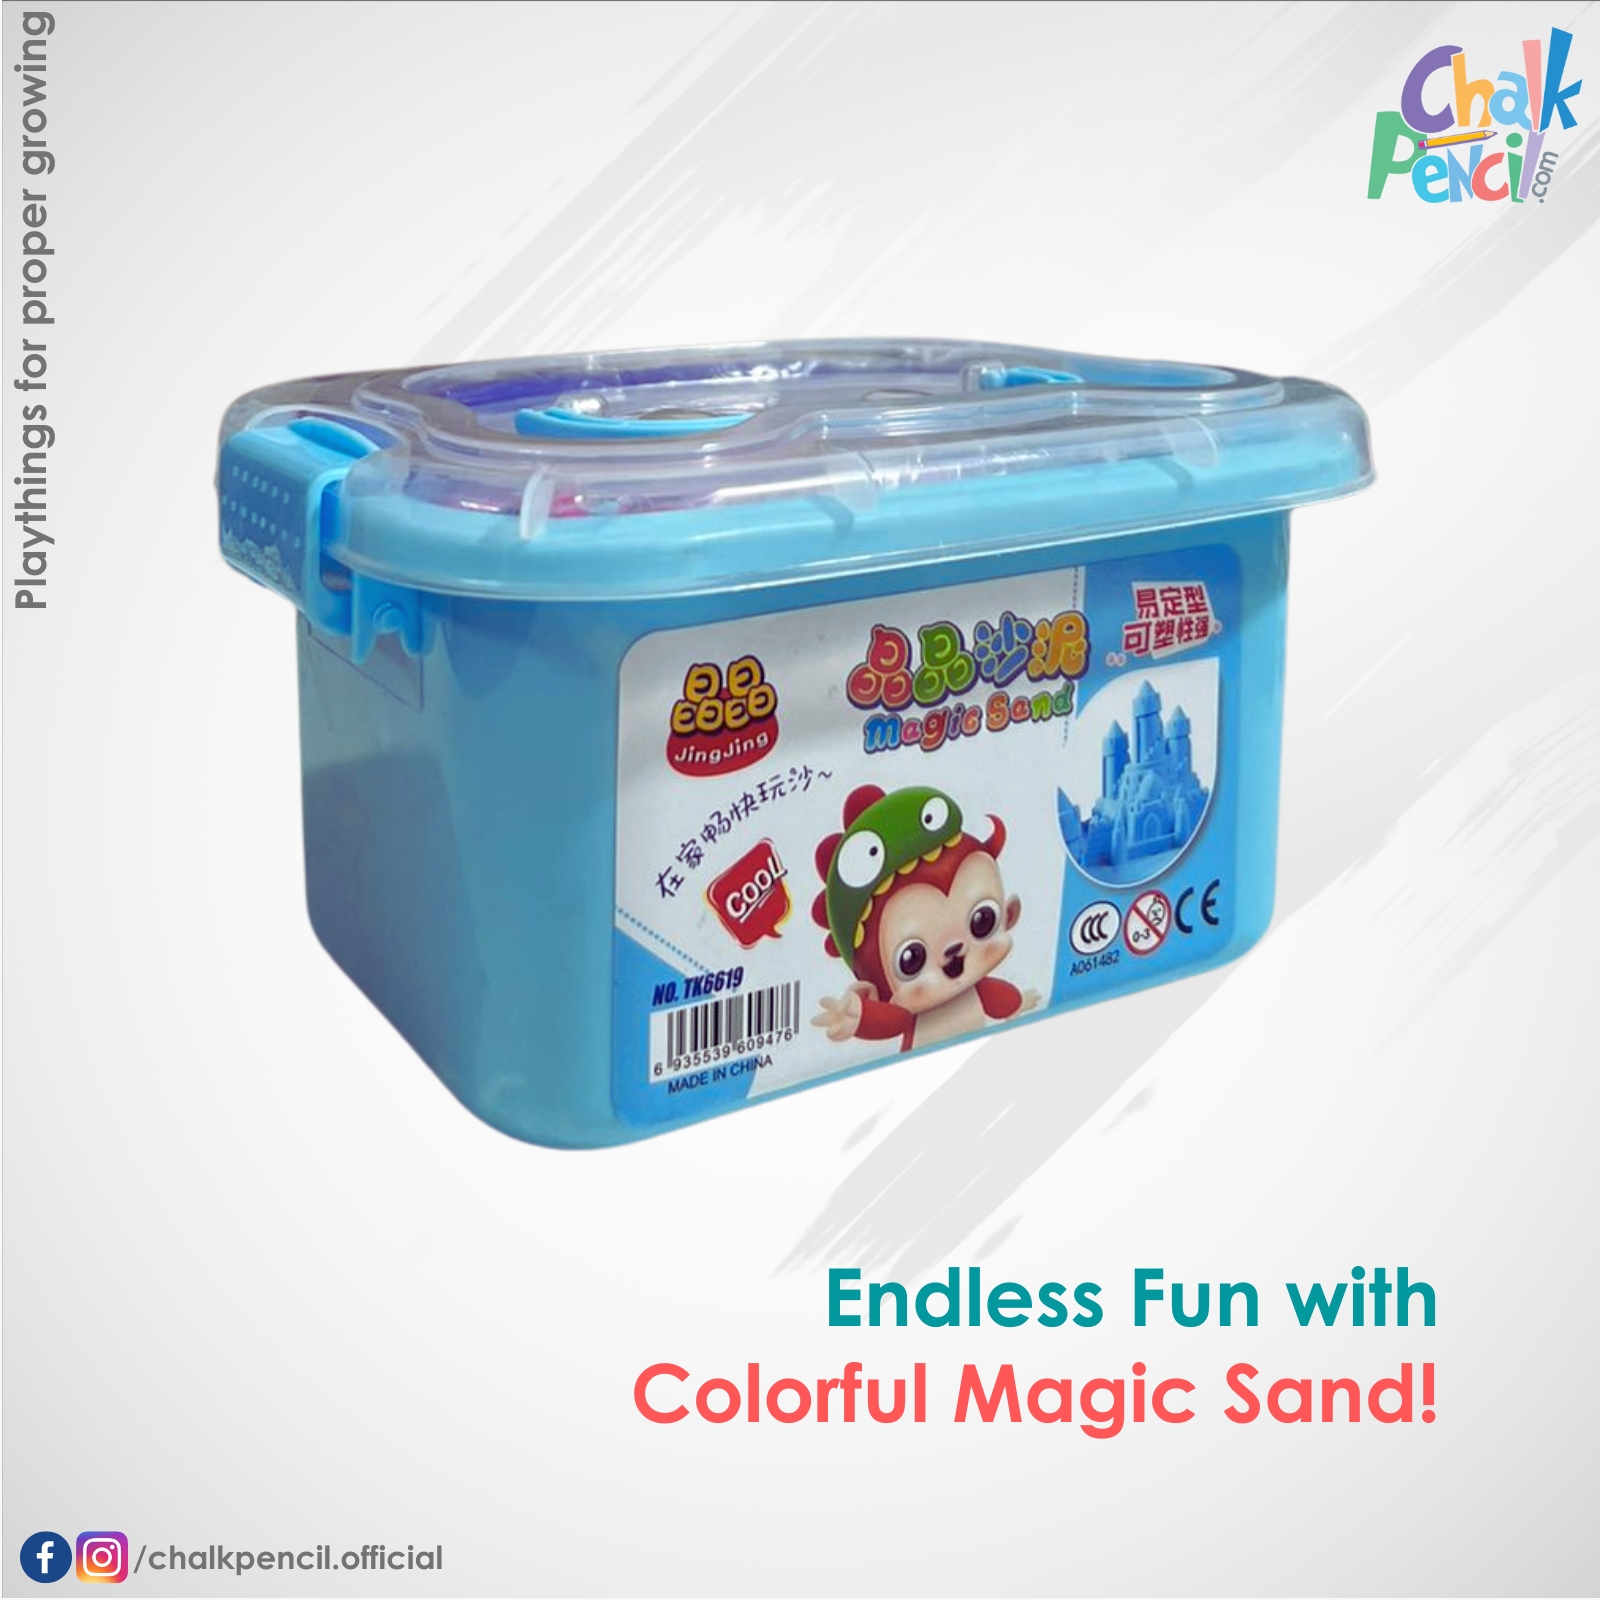 Colorful Magic Sand